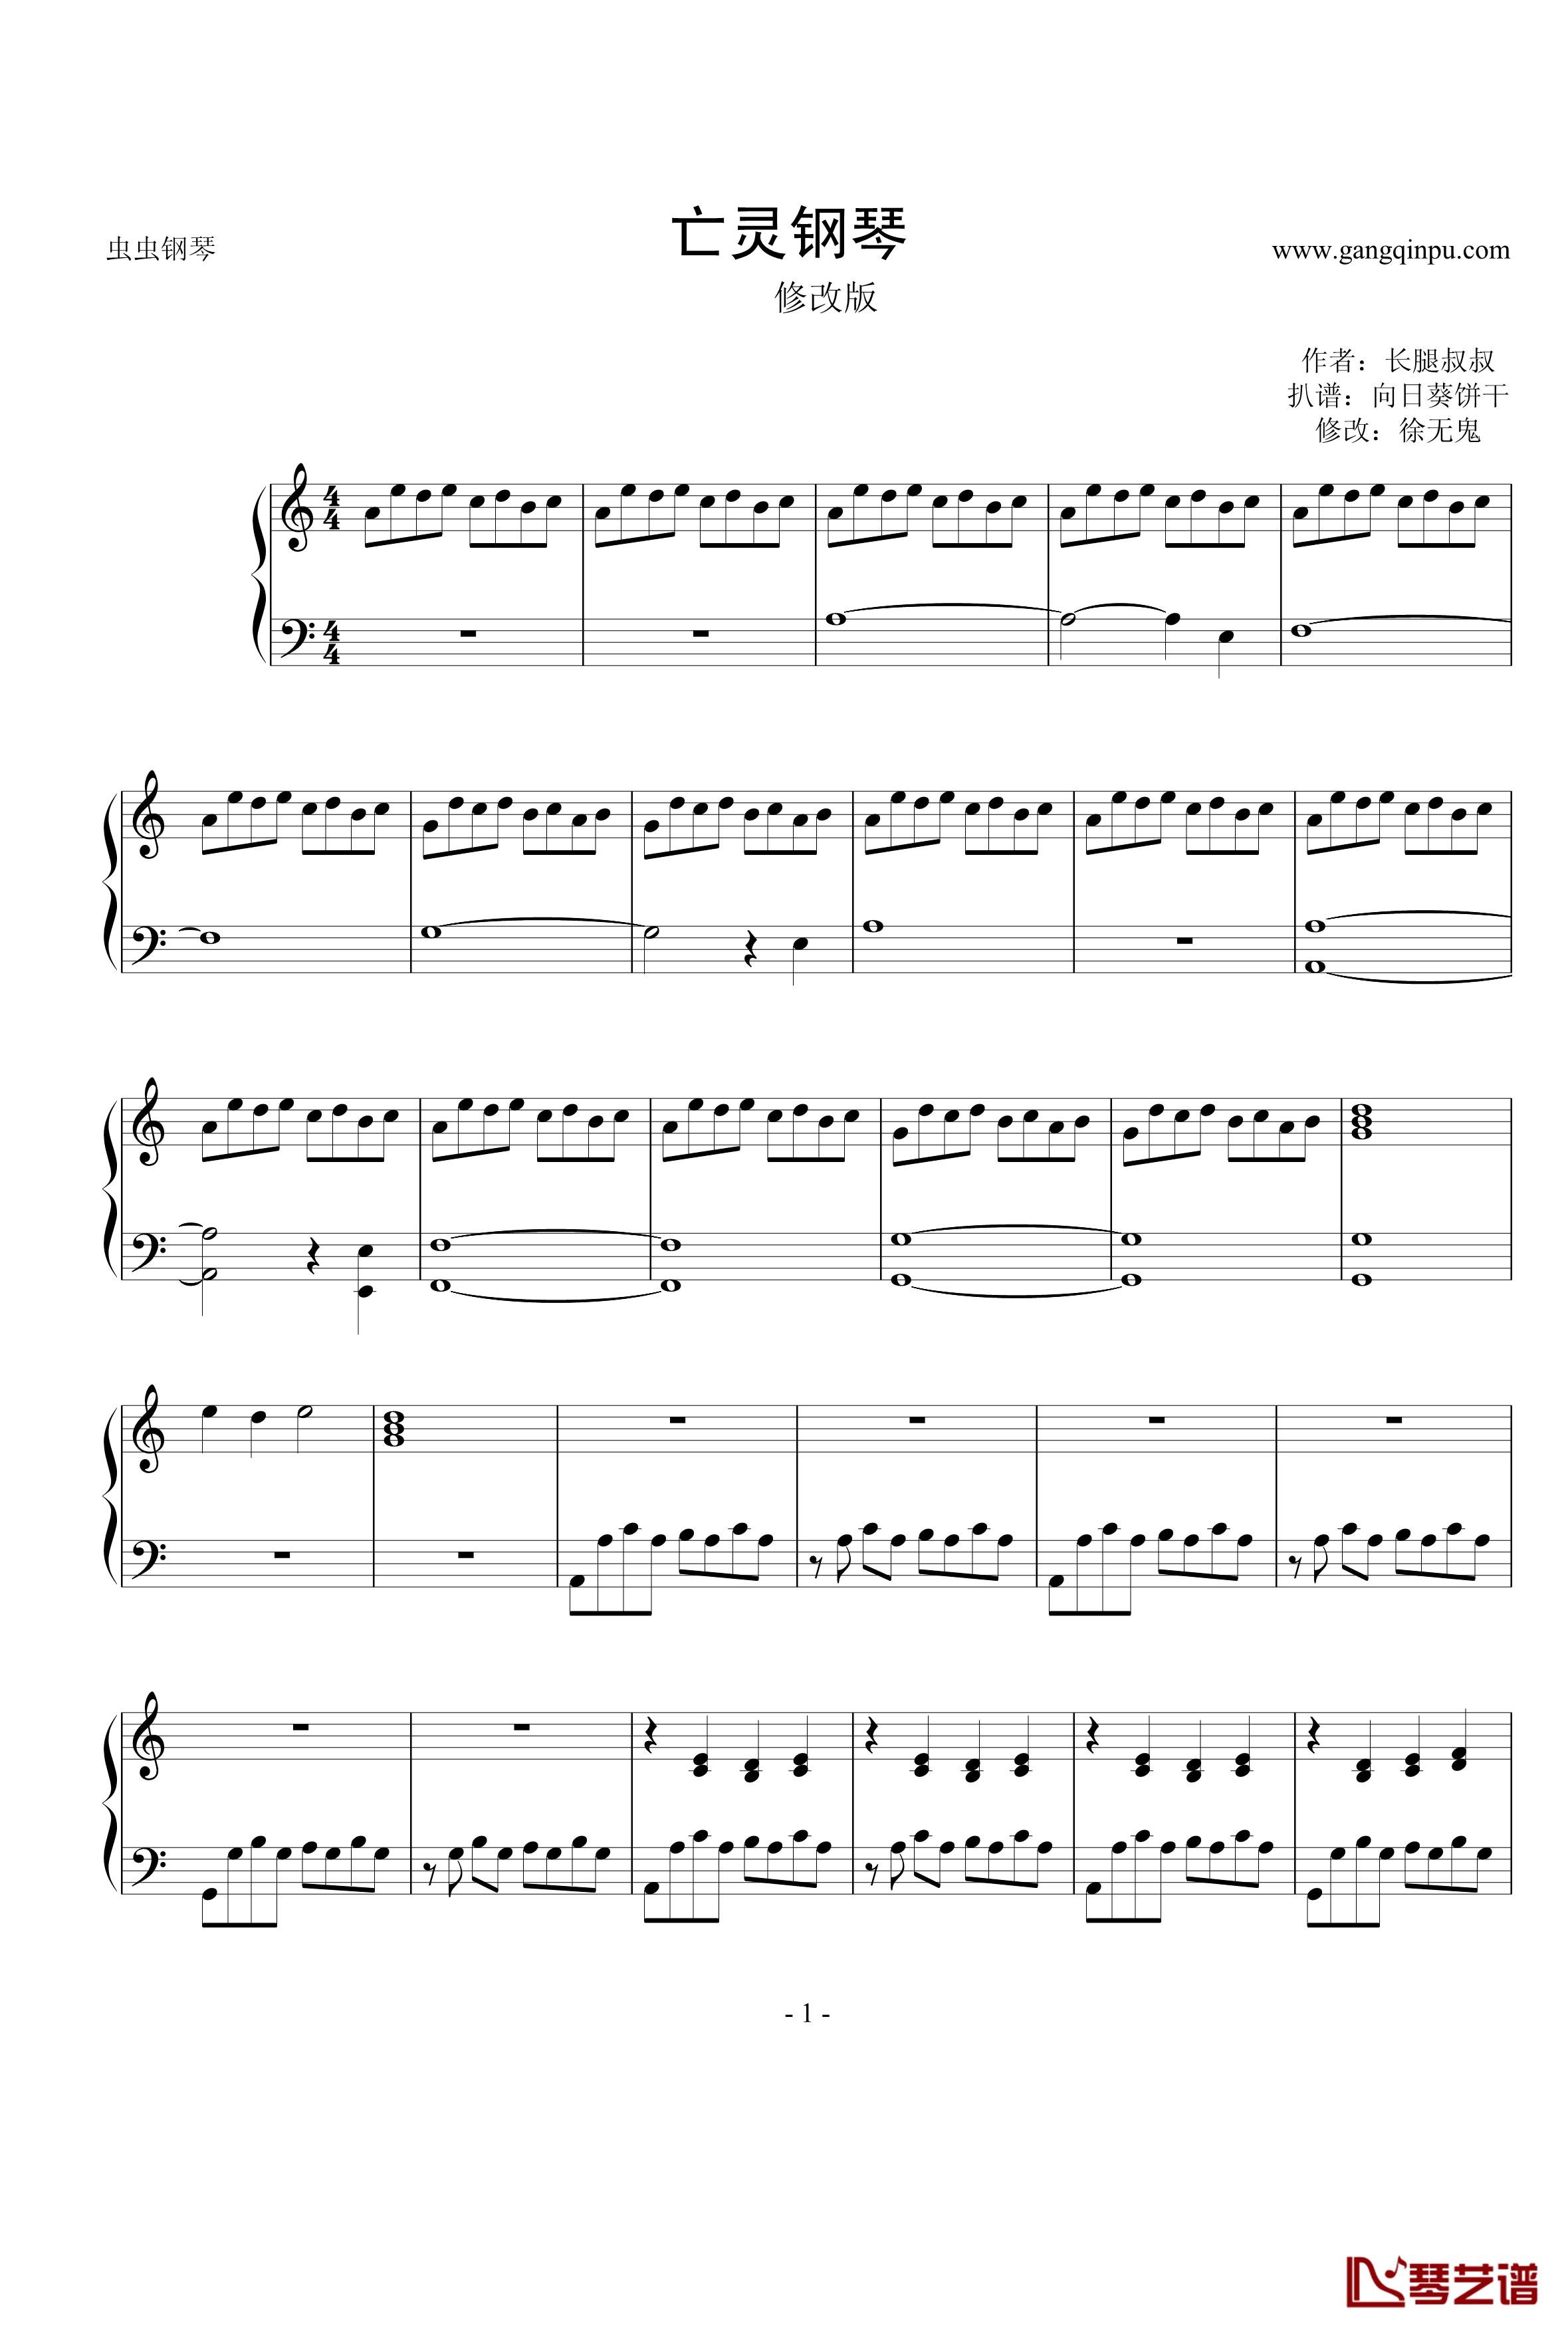 亡灵钢琴钢琴谱-修改版-电锯惊魂1